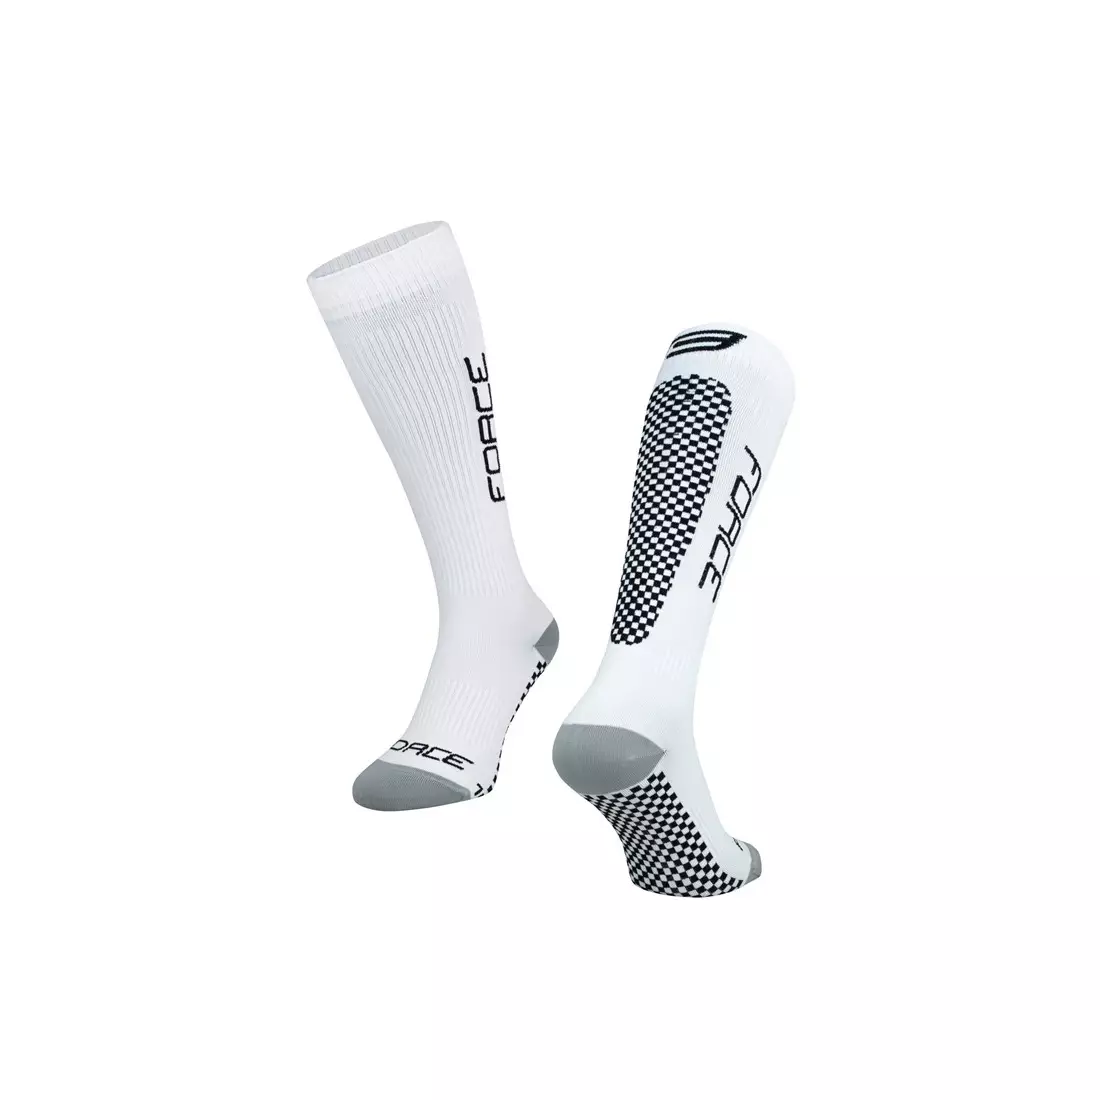 FORCE TESSERA COMPRESSION kompresní ponožky, černý a bílý